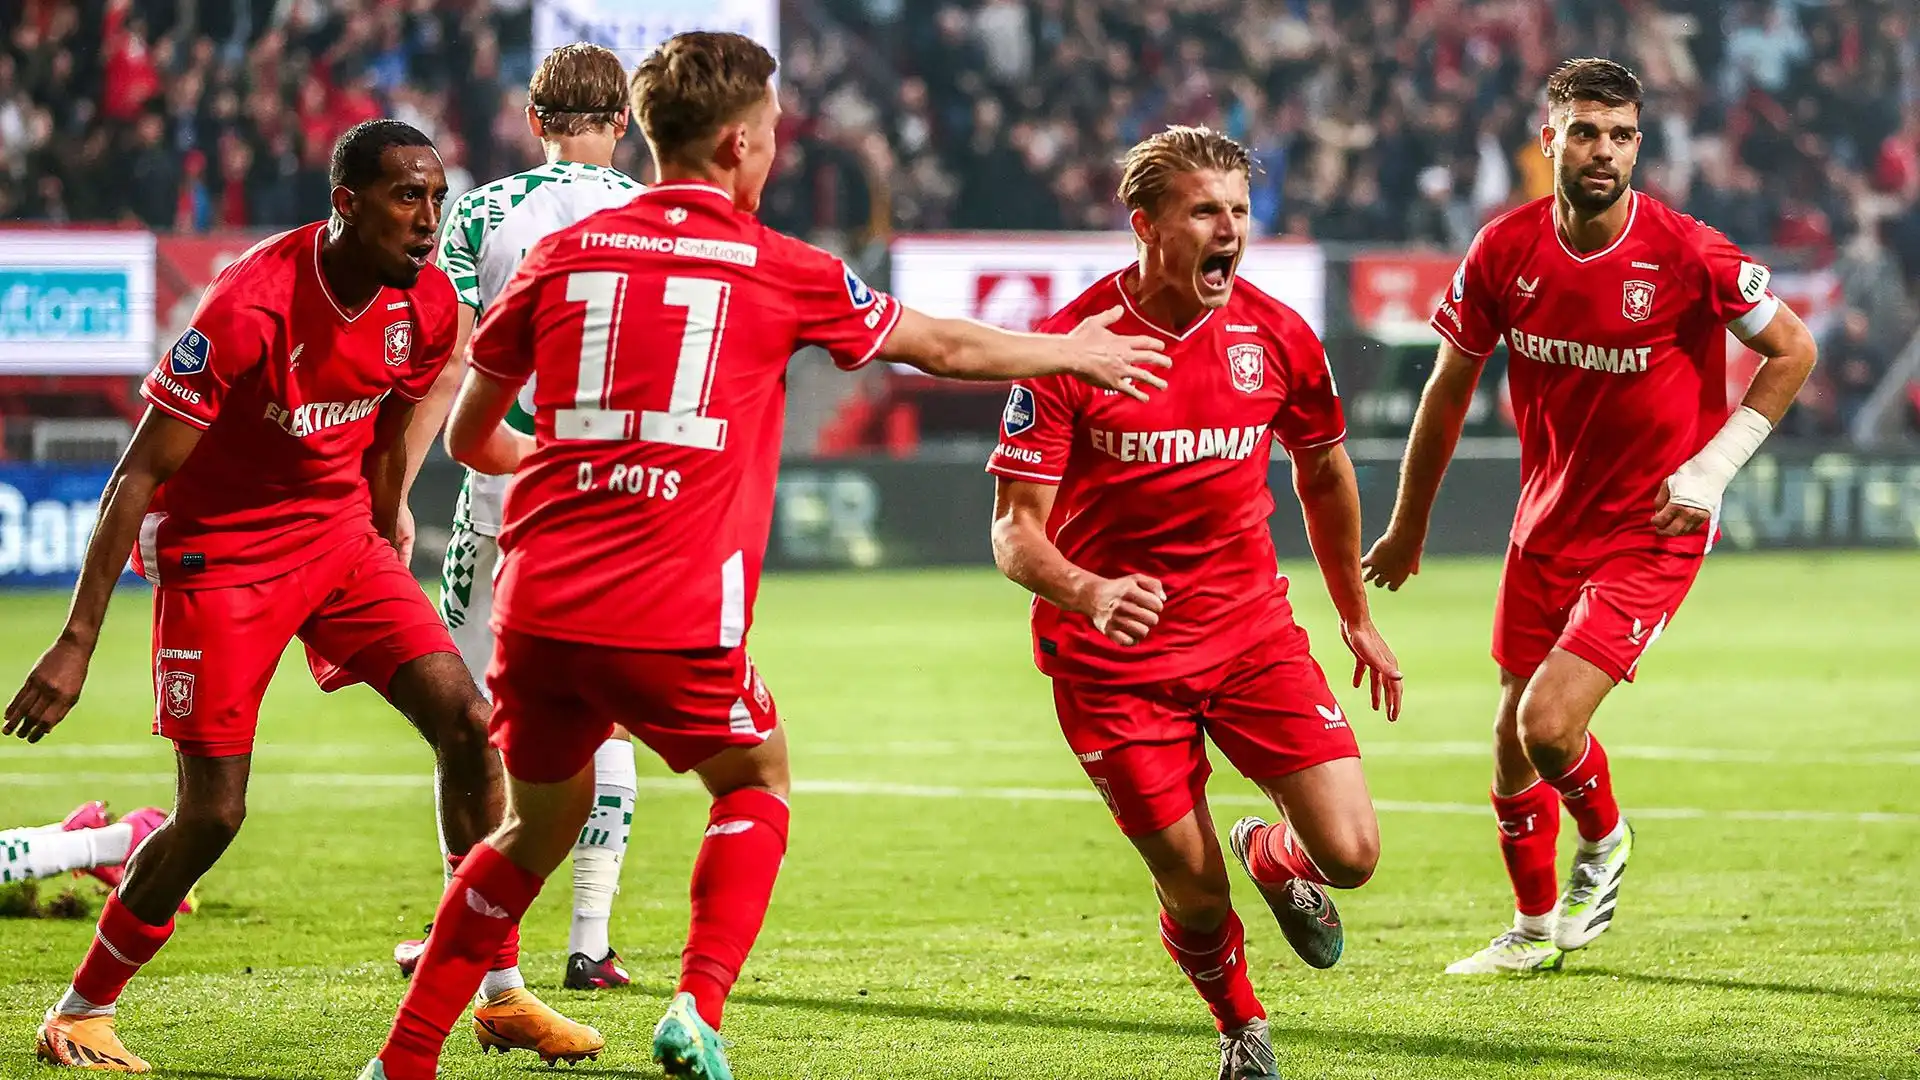 Il Twente l'ha ingaggiato gratis nel 2022 ma in estate potrebbe perderlo